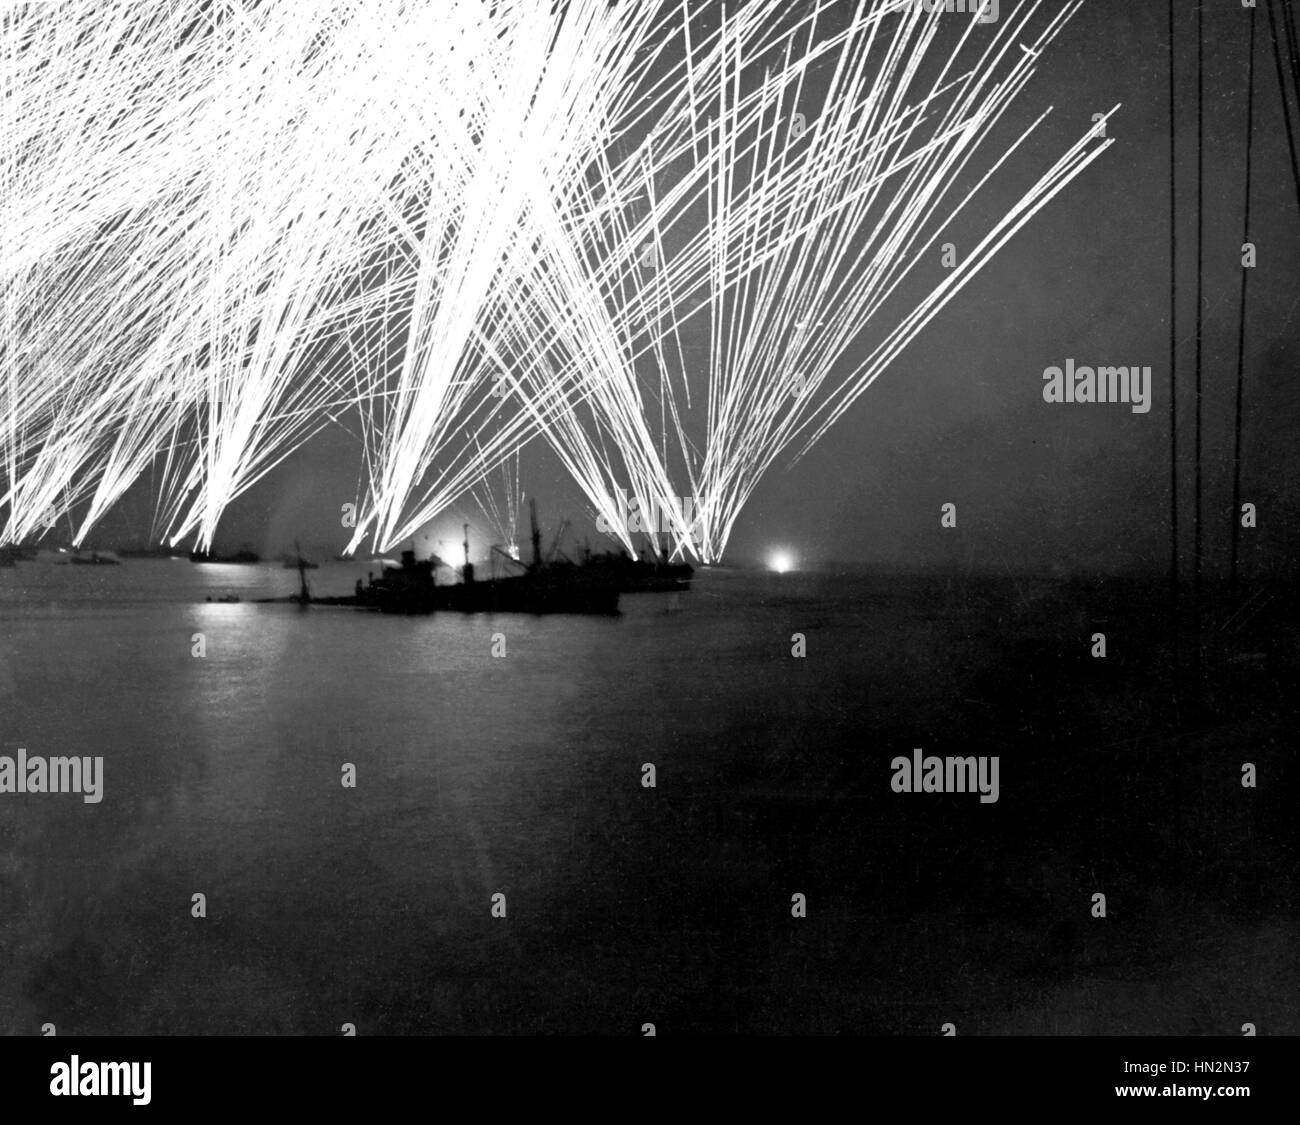 Normandie, Frankreich den deutschen Angriff auf Cherbourg bei Nacht nach der Landung in der Normandie Juni 1944 Frankreich - Weltkrieg Nationalarchiv. Washington Stockfoto